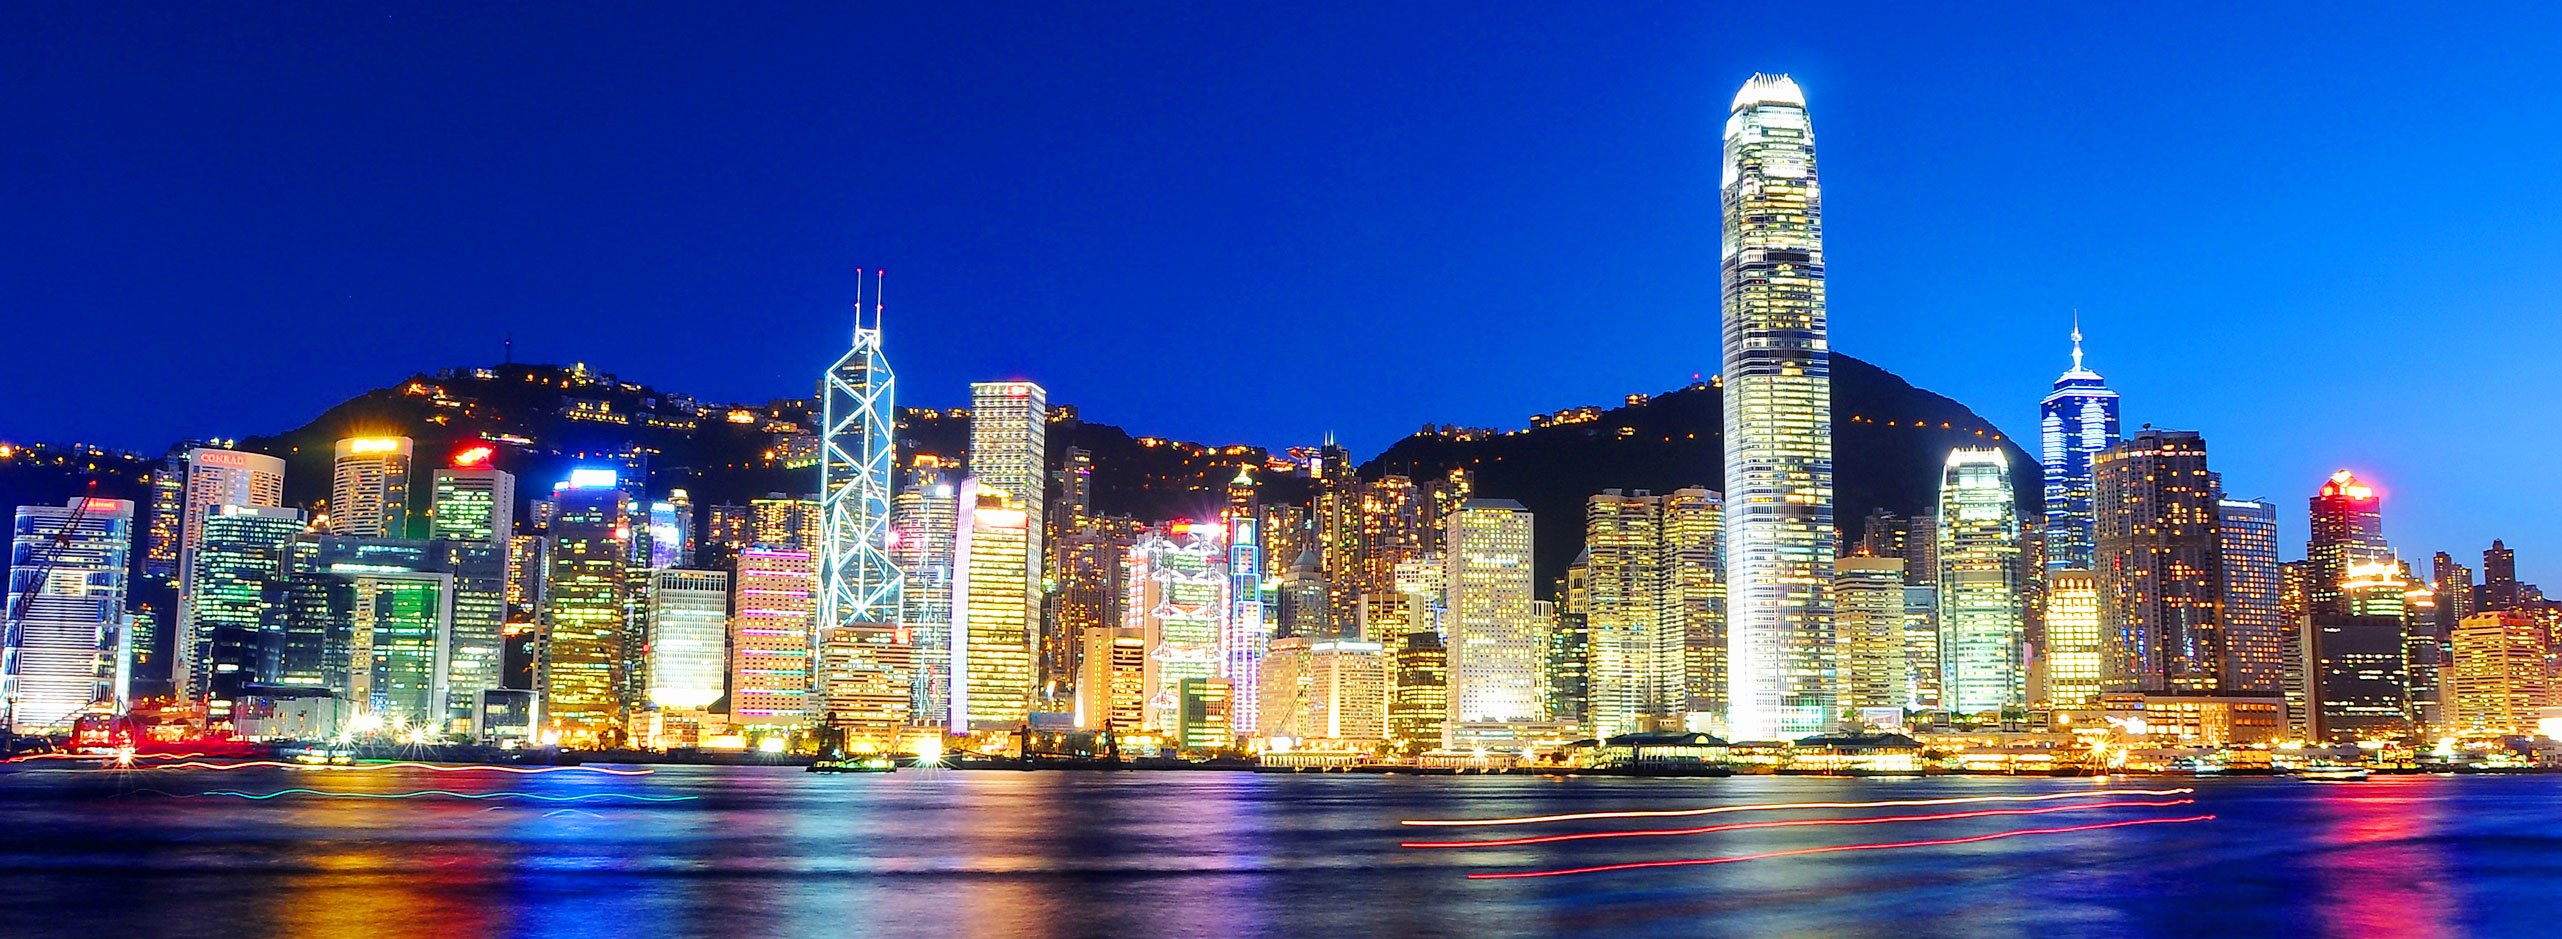 Govt awards US$6.29mn bid for 'Relaunch Hong Kong'